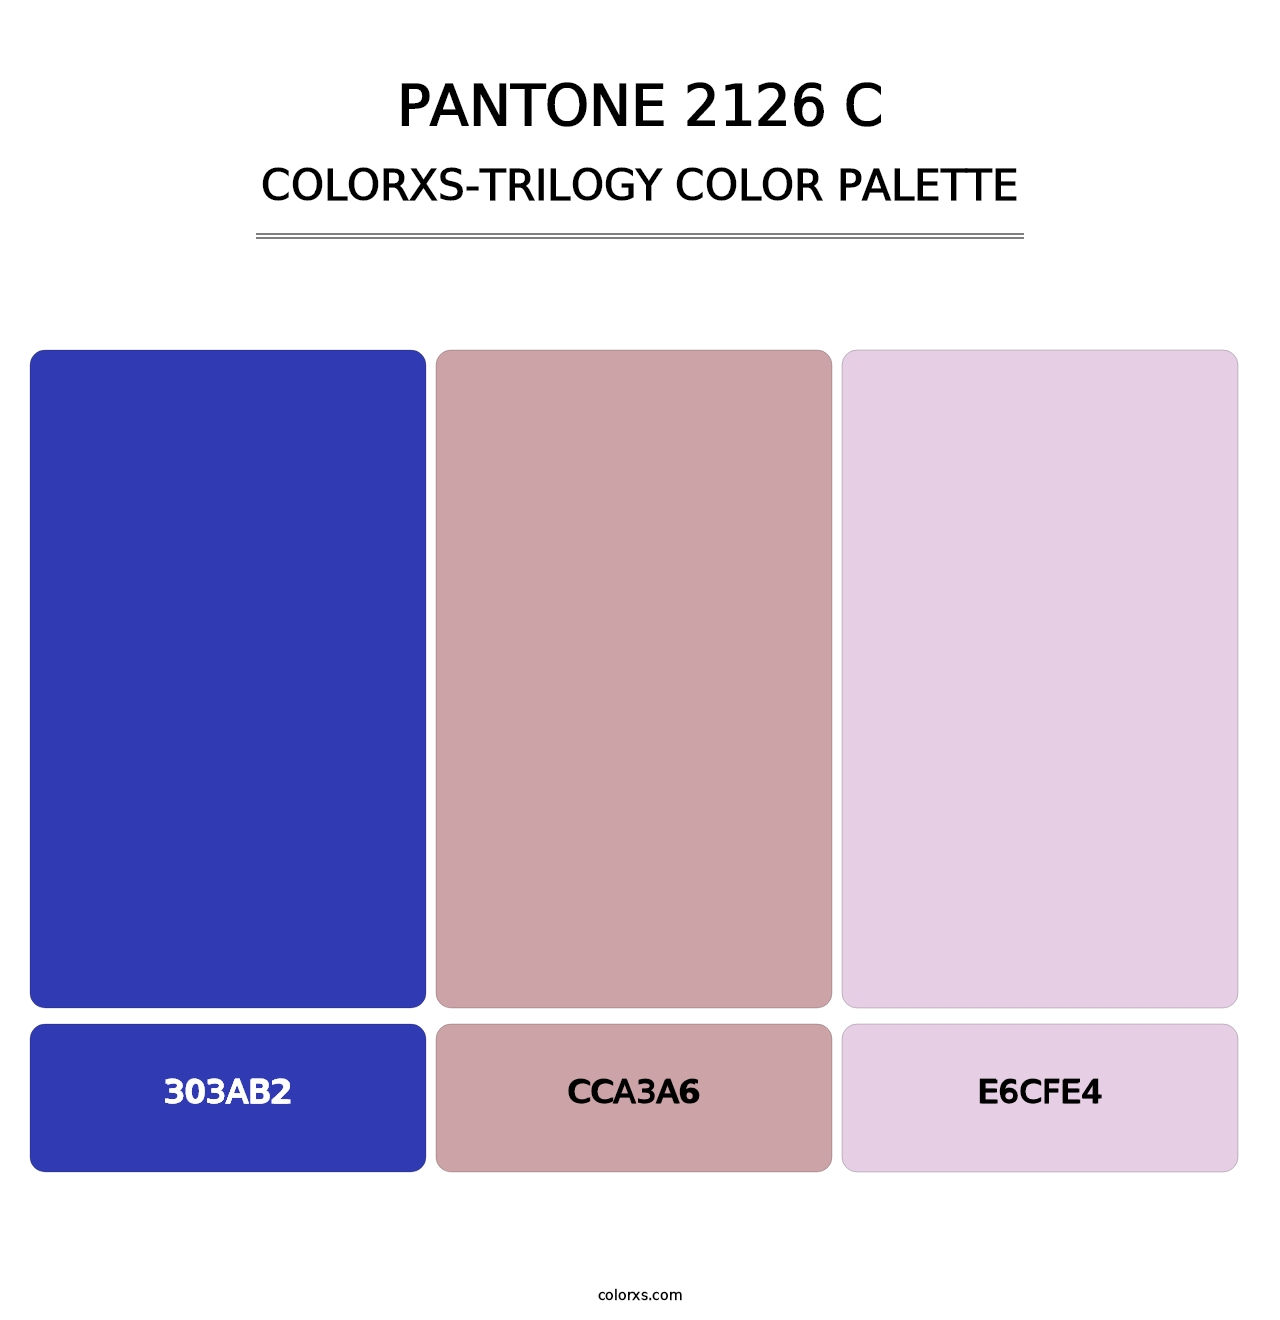 PANTONE 2126 C - Colorxs Trilogy Palette